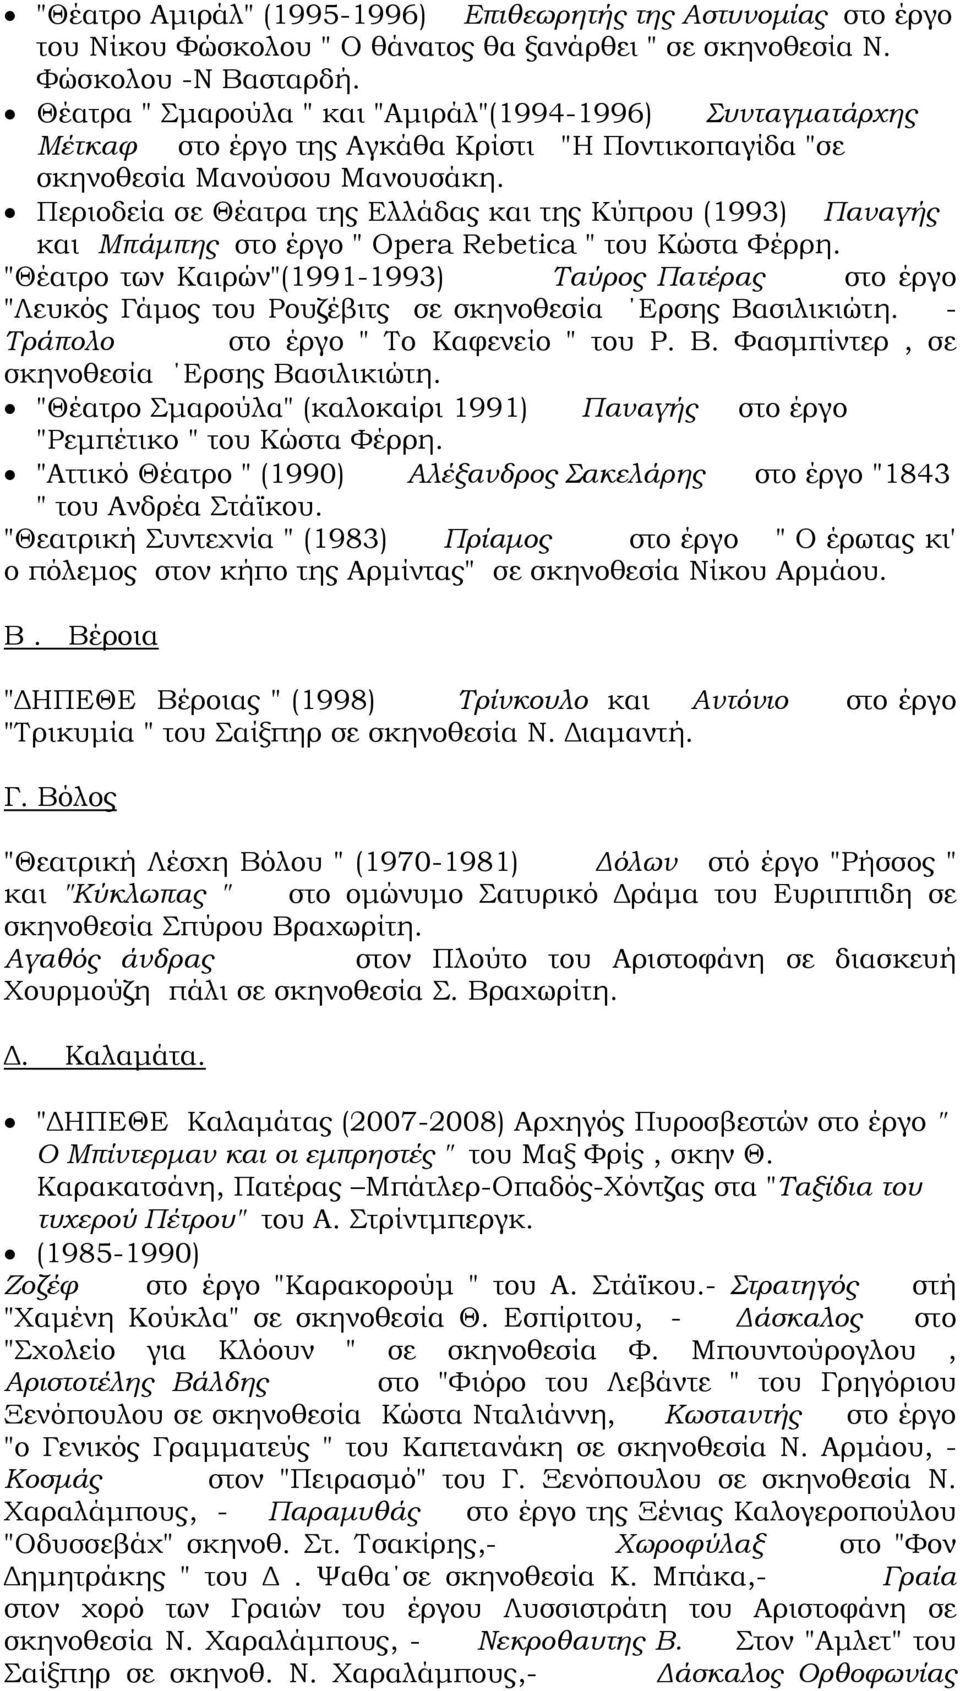 Περιοδεία σε Θέατρα της Ελλάδας και της Κύπρου (1993) Παναγής και Μπάμπης στο έργο " Opera Rebetica " του Κώστα Φέρρη.